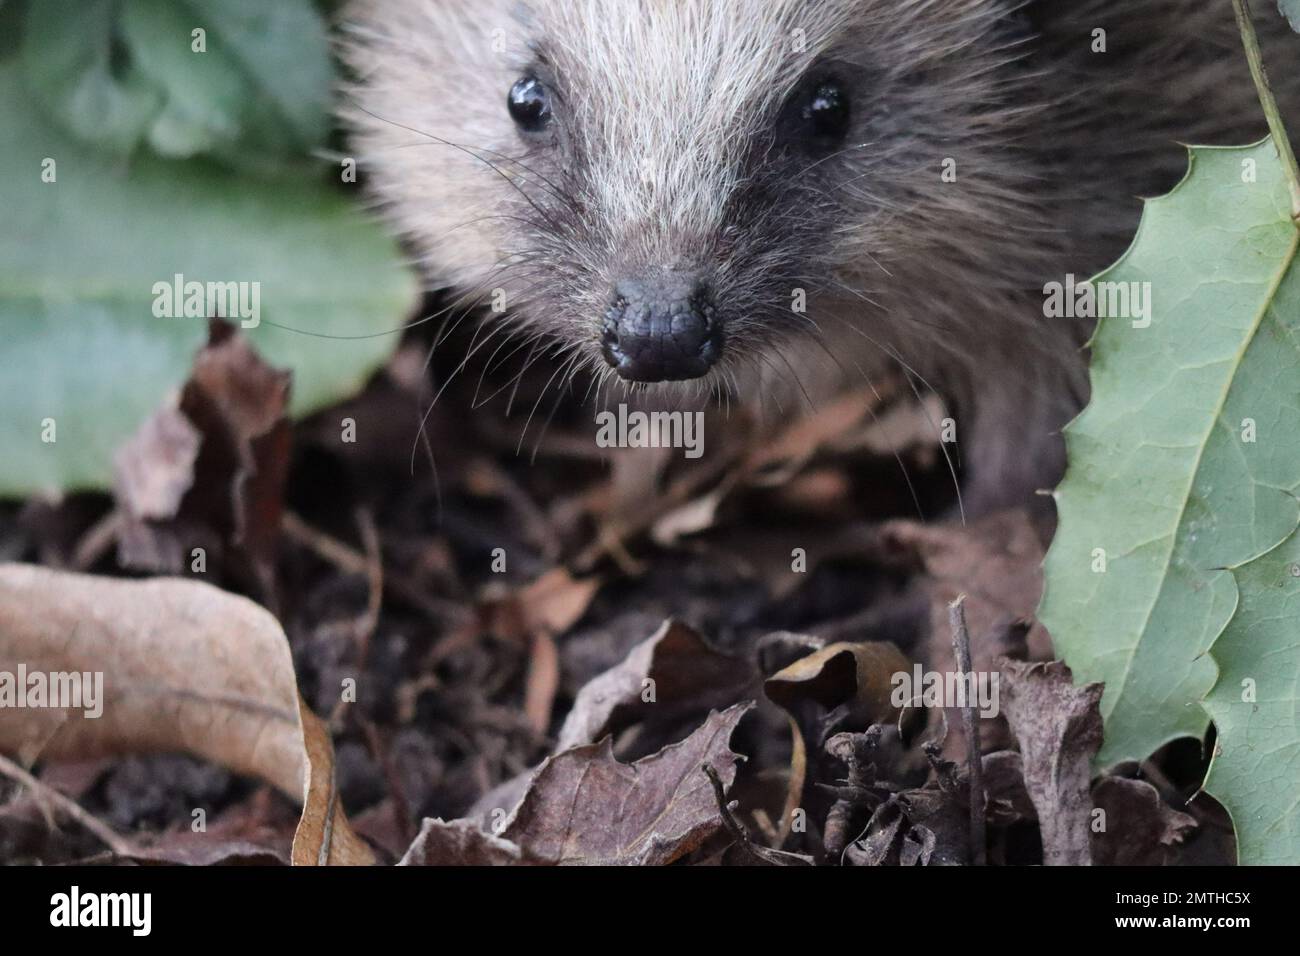 Hedgehog wanders around in the Garden Stock Photo